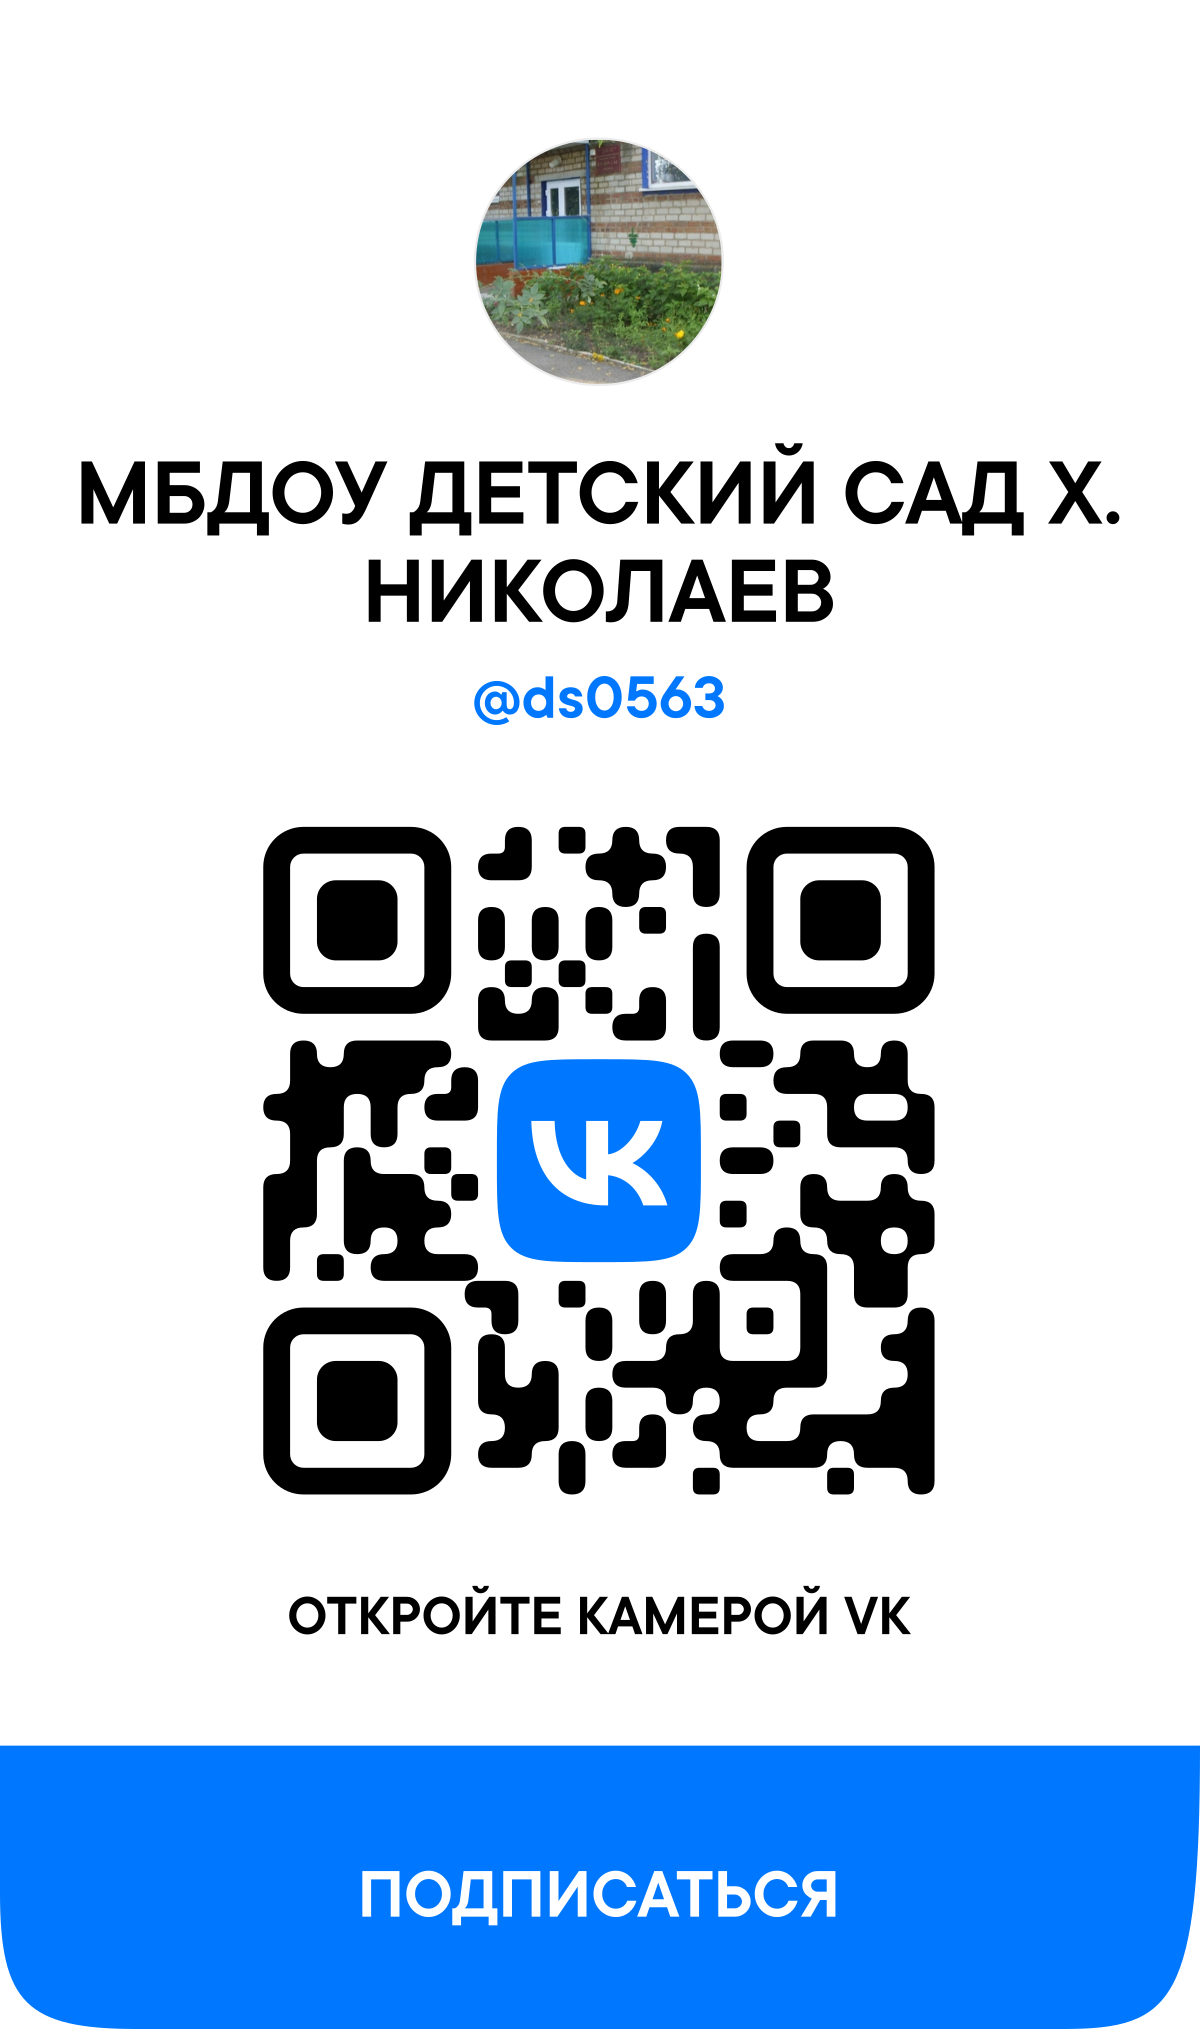 QR-кода сообщества ВКонтакте 